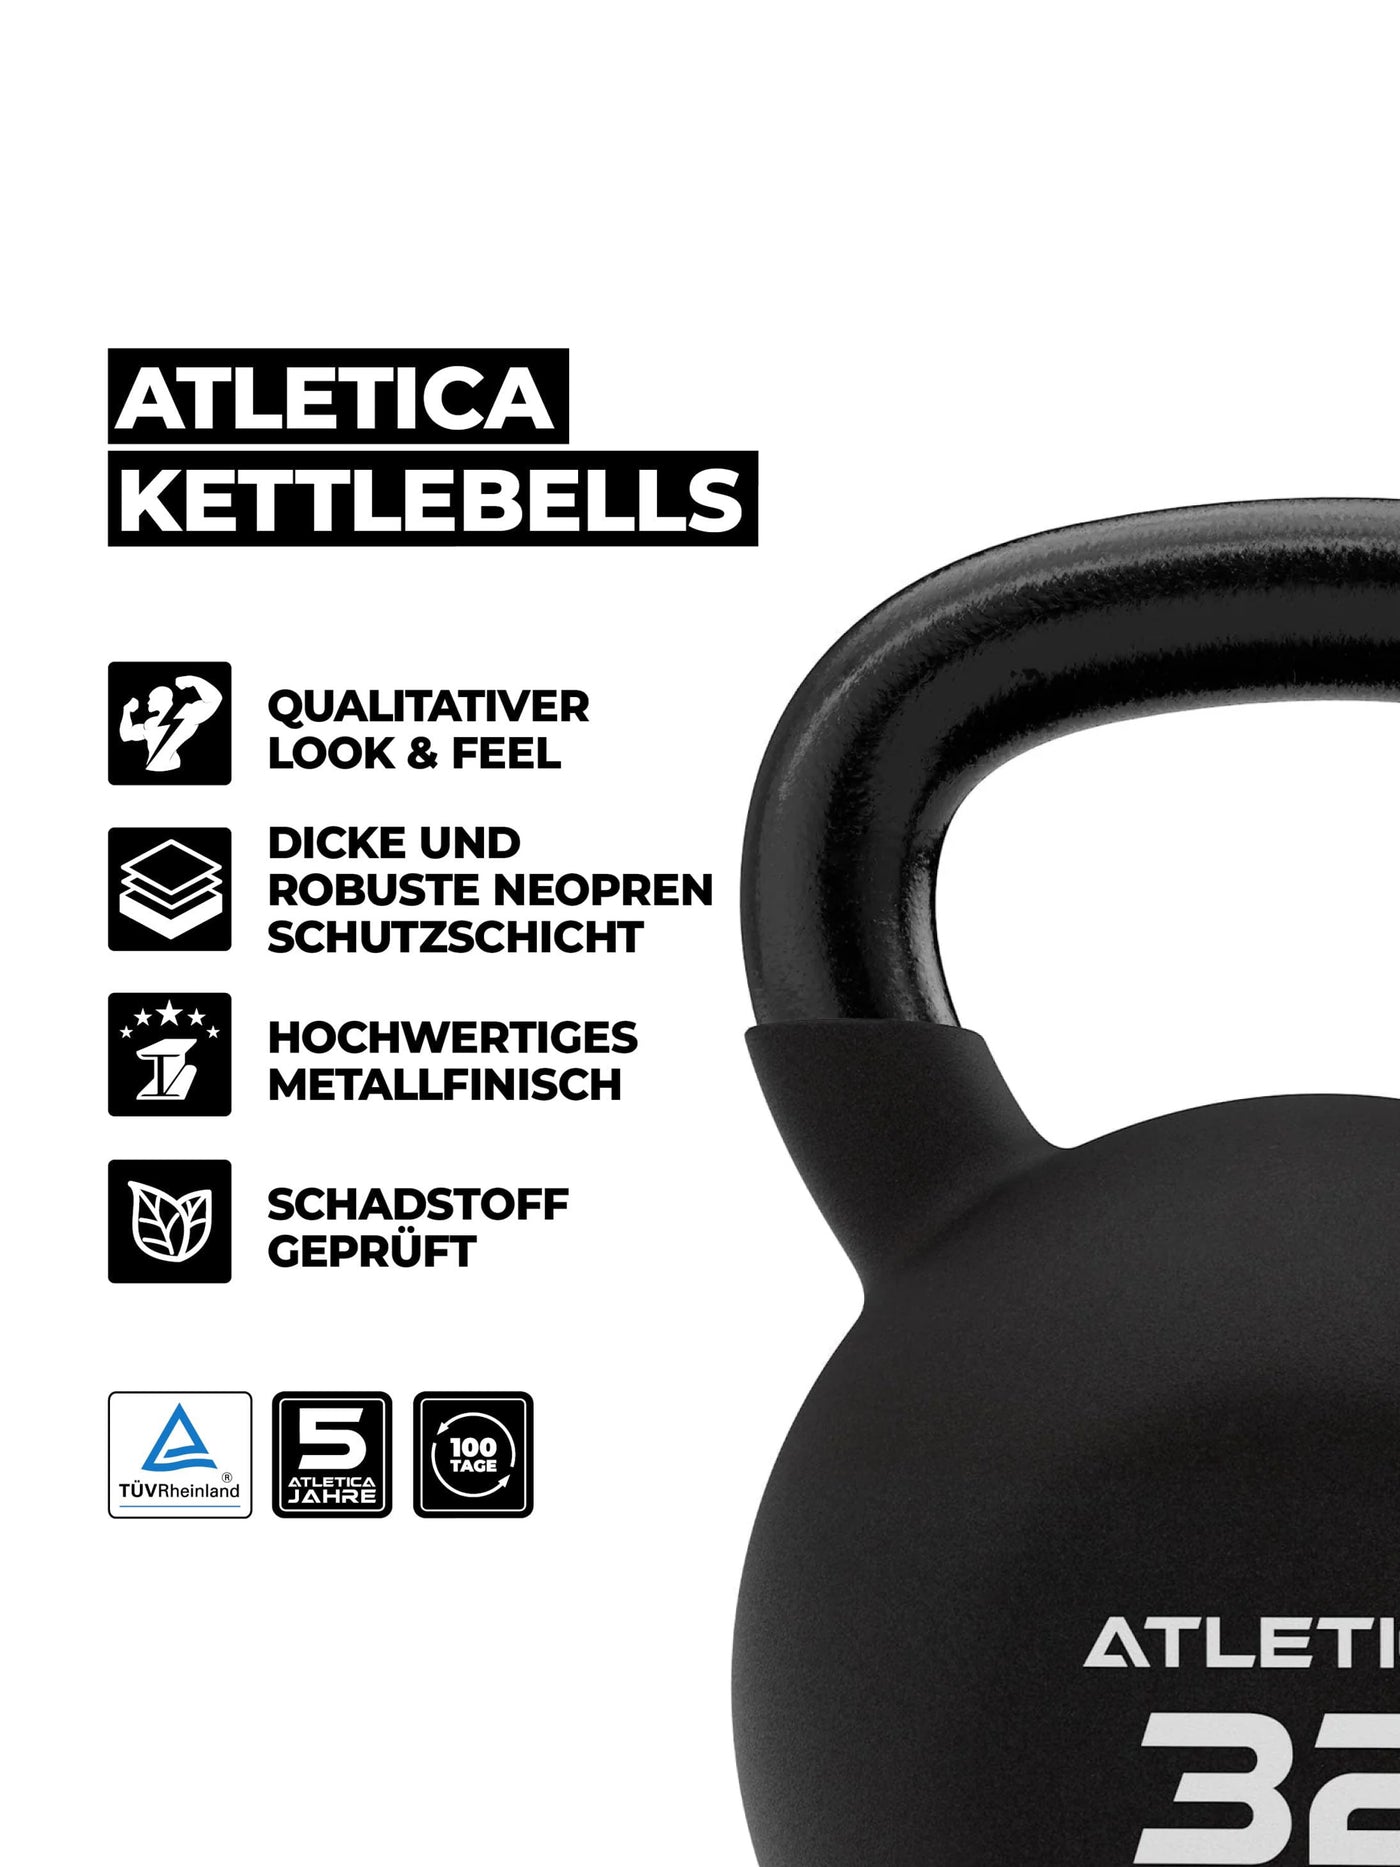 Kettlebells Gewichte: 10kg 18kg 26kg 32kg | hochwertiger Look & Feel | TÜV geprüft auf Schadstoffe